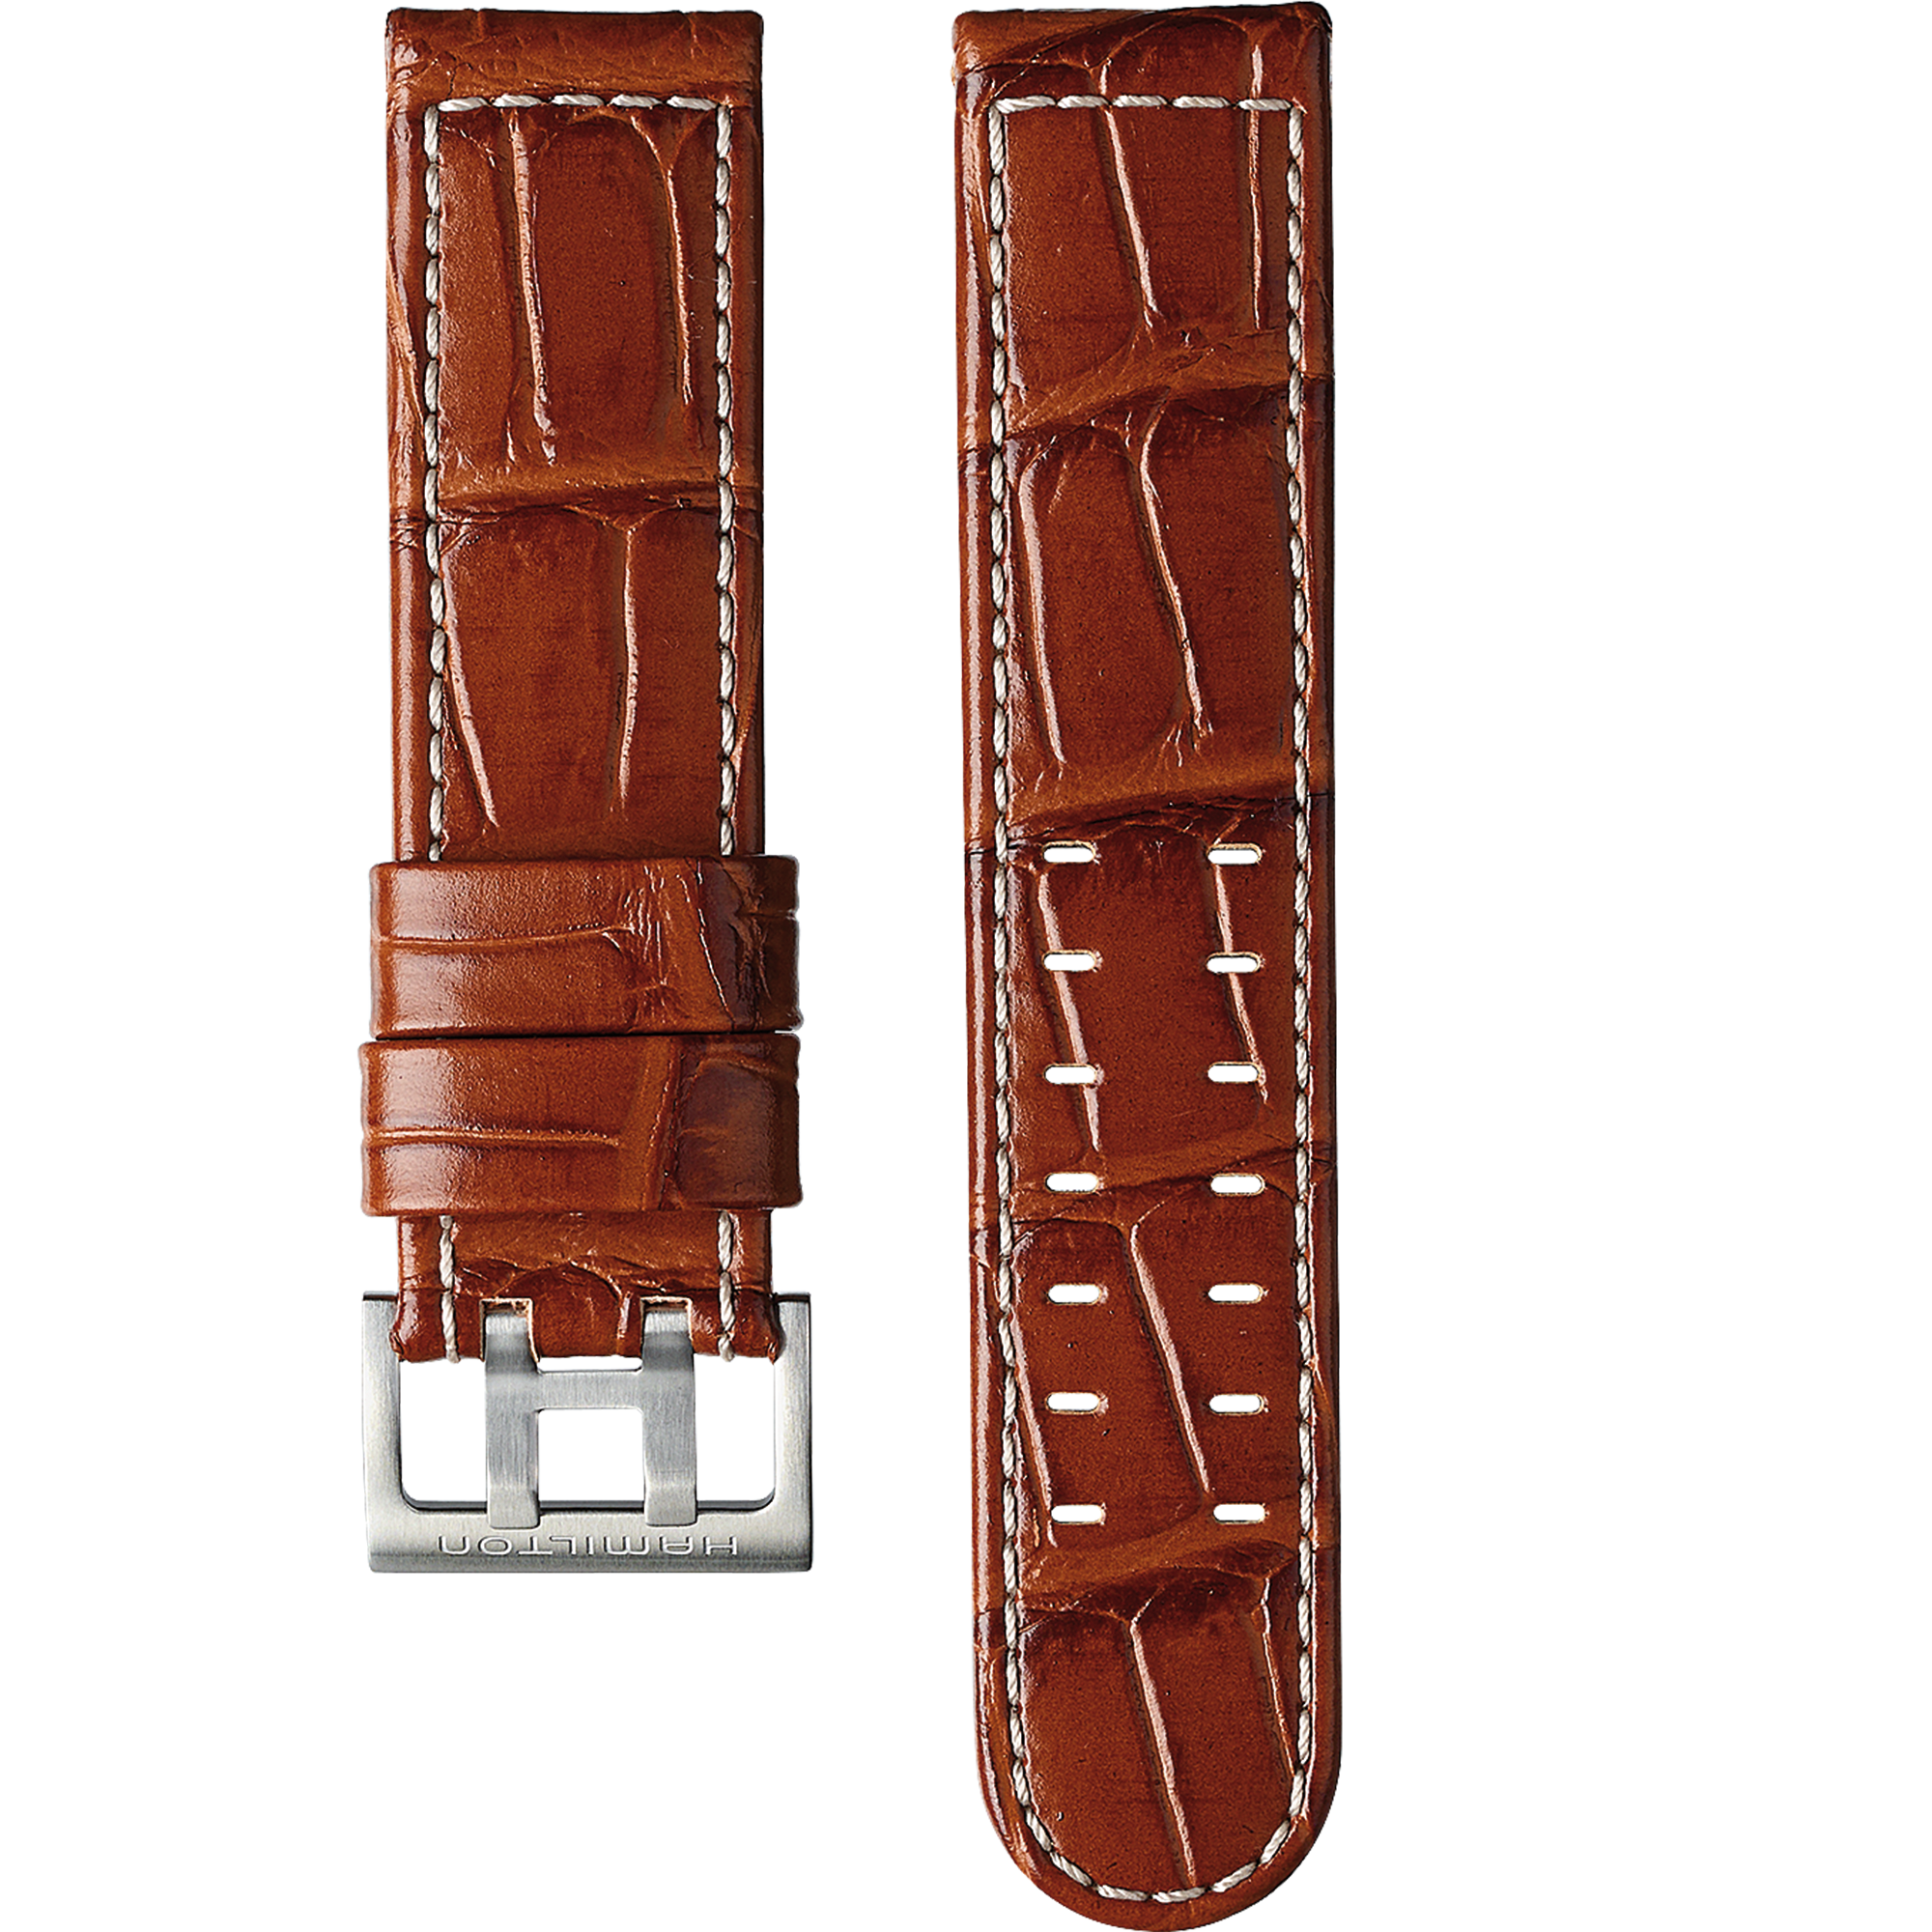 亮棕色皮带22毫米- H6006471021 | Hamilton Watch